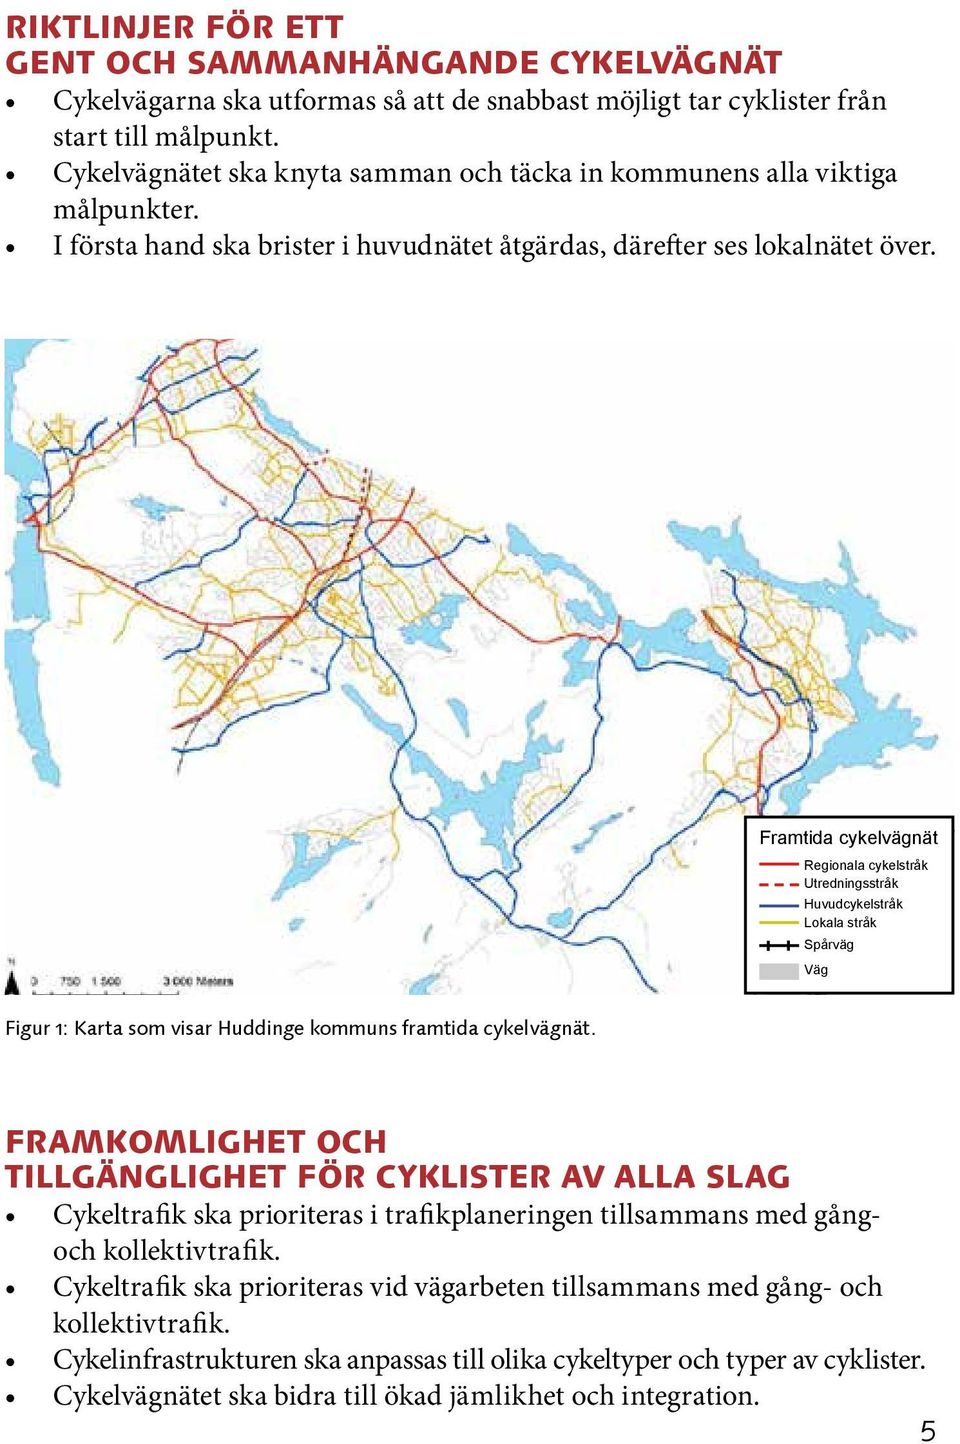 Framtida cykelvägnät Regionala cykelstråk Utredningsstråk Huvudcykelstråk Lokala stråk Spårväg Väg Figur 1: Karta som visar Huddinge kommuns framtida cykelvägnät.